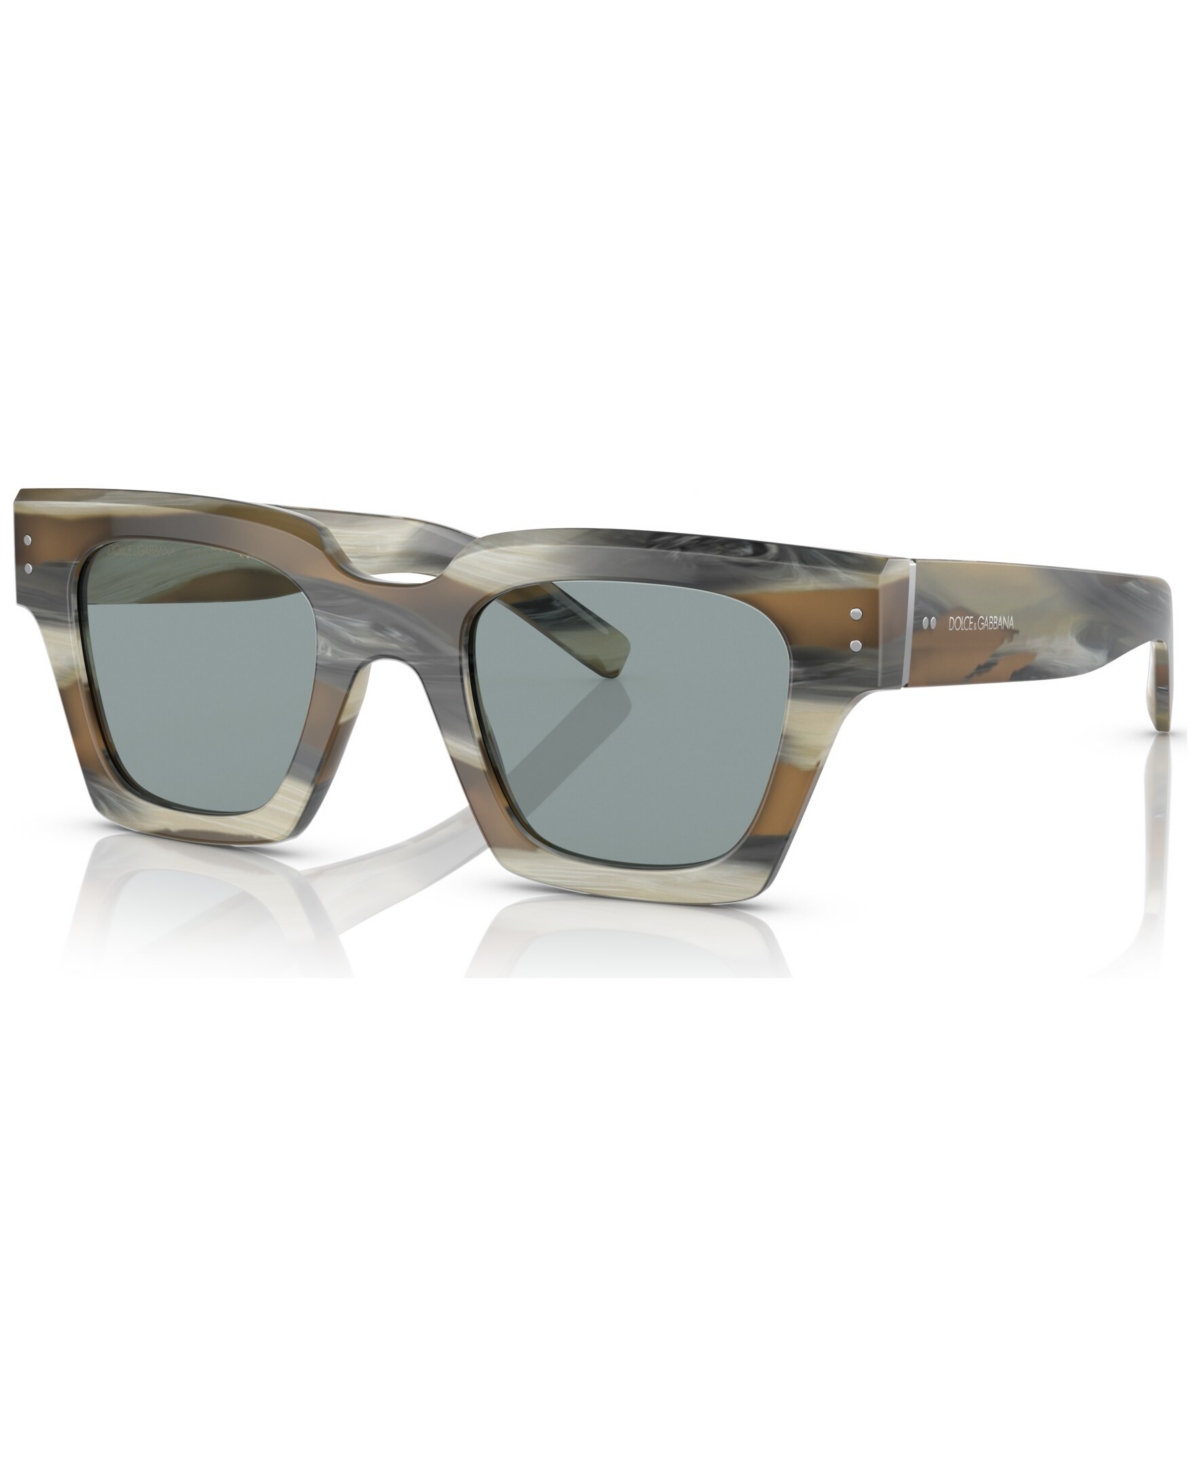 Dolce&Gabbana Men's Sunglasses, DG4413 - Gray Horn